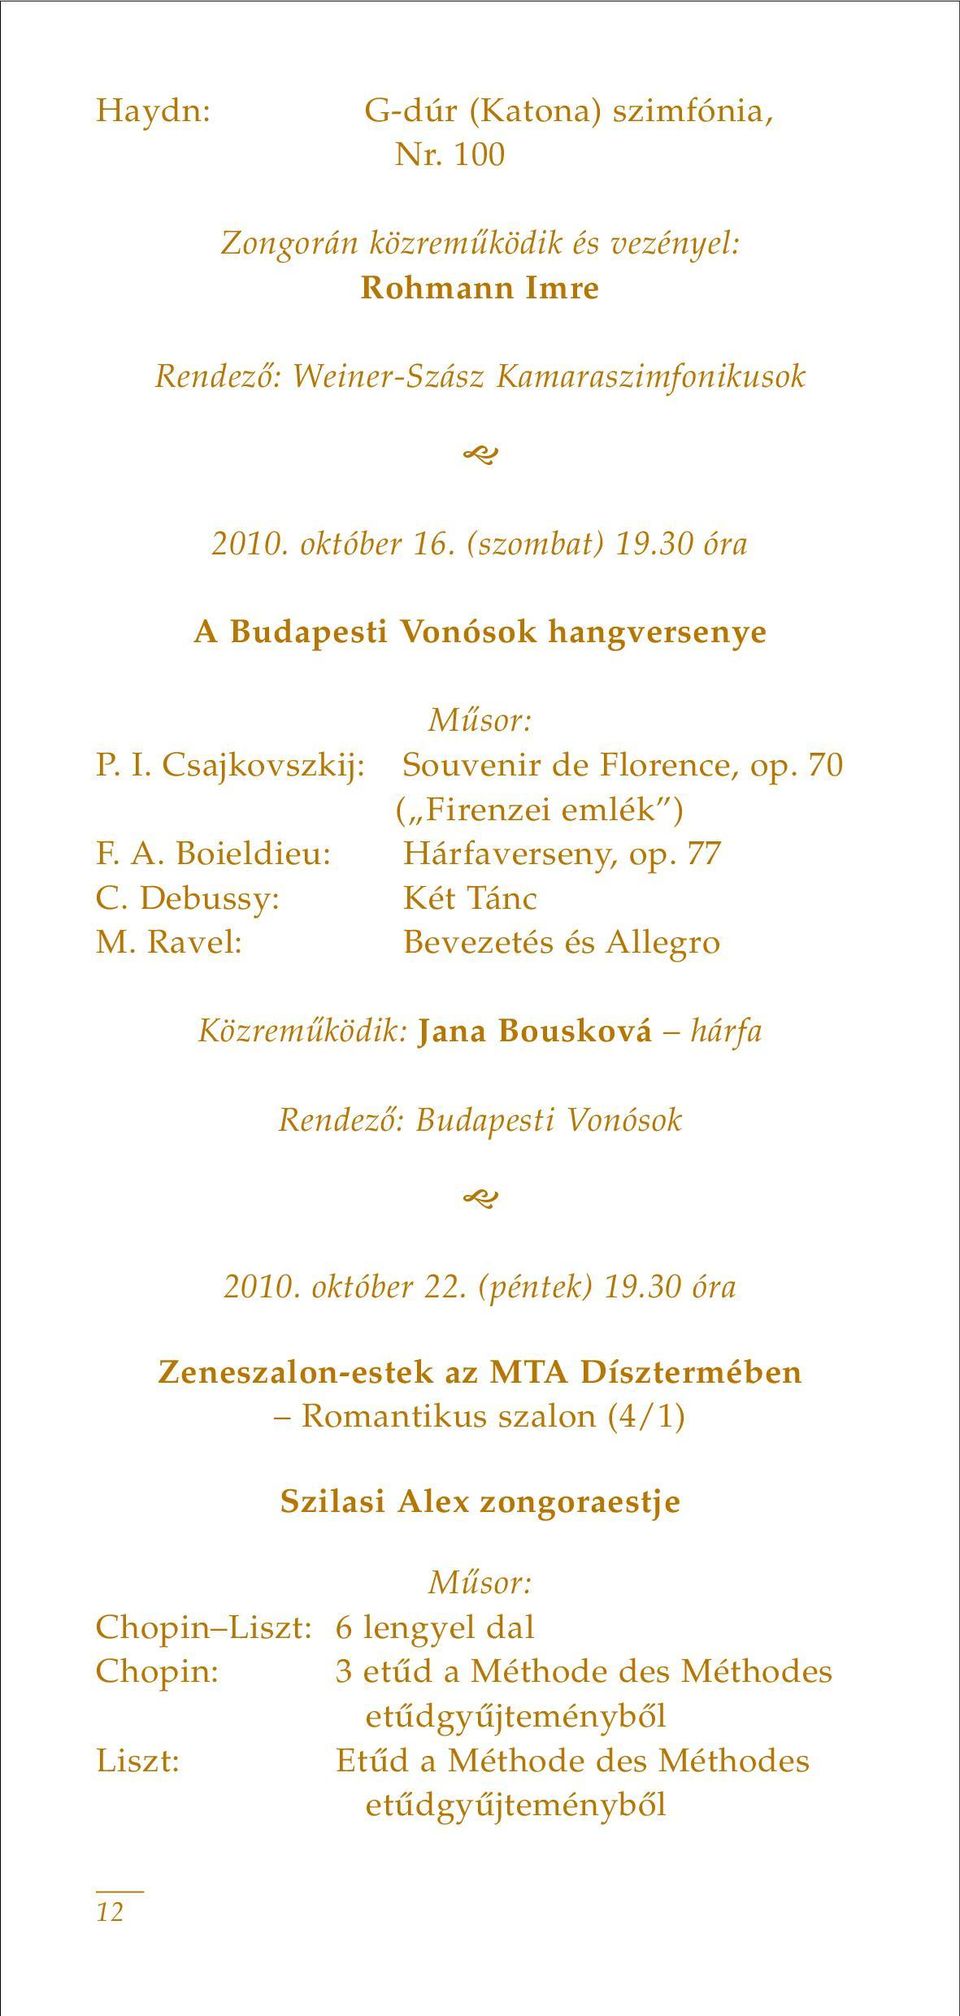 Ravel: Bevezetés és Allegro Közremûködik: Jana Bousková hárfa Rendezô: Budapesti Vonósok 2010. október 22. (péntek) 19.